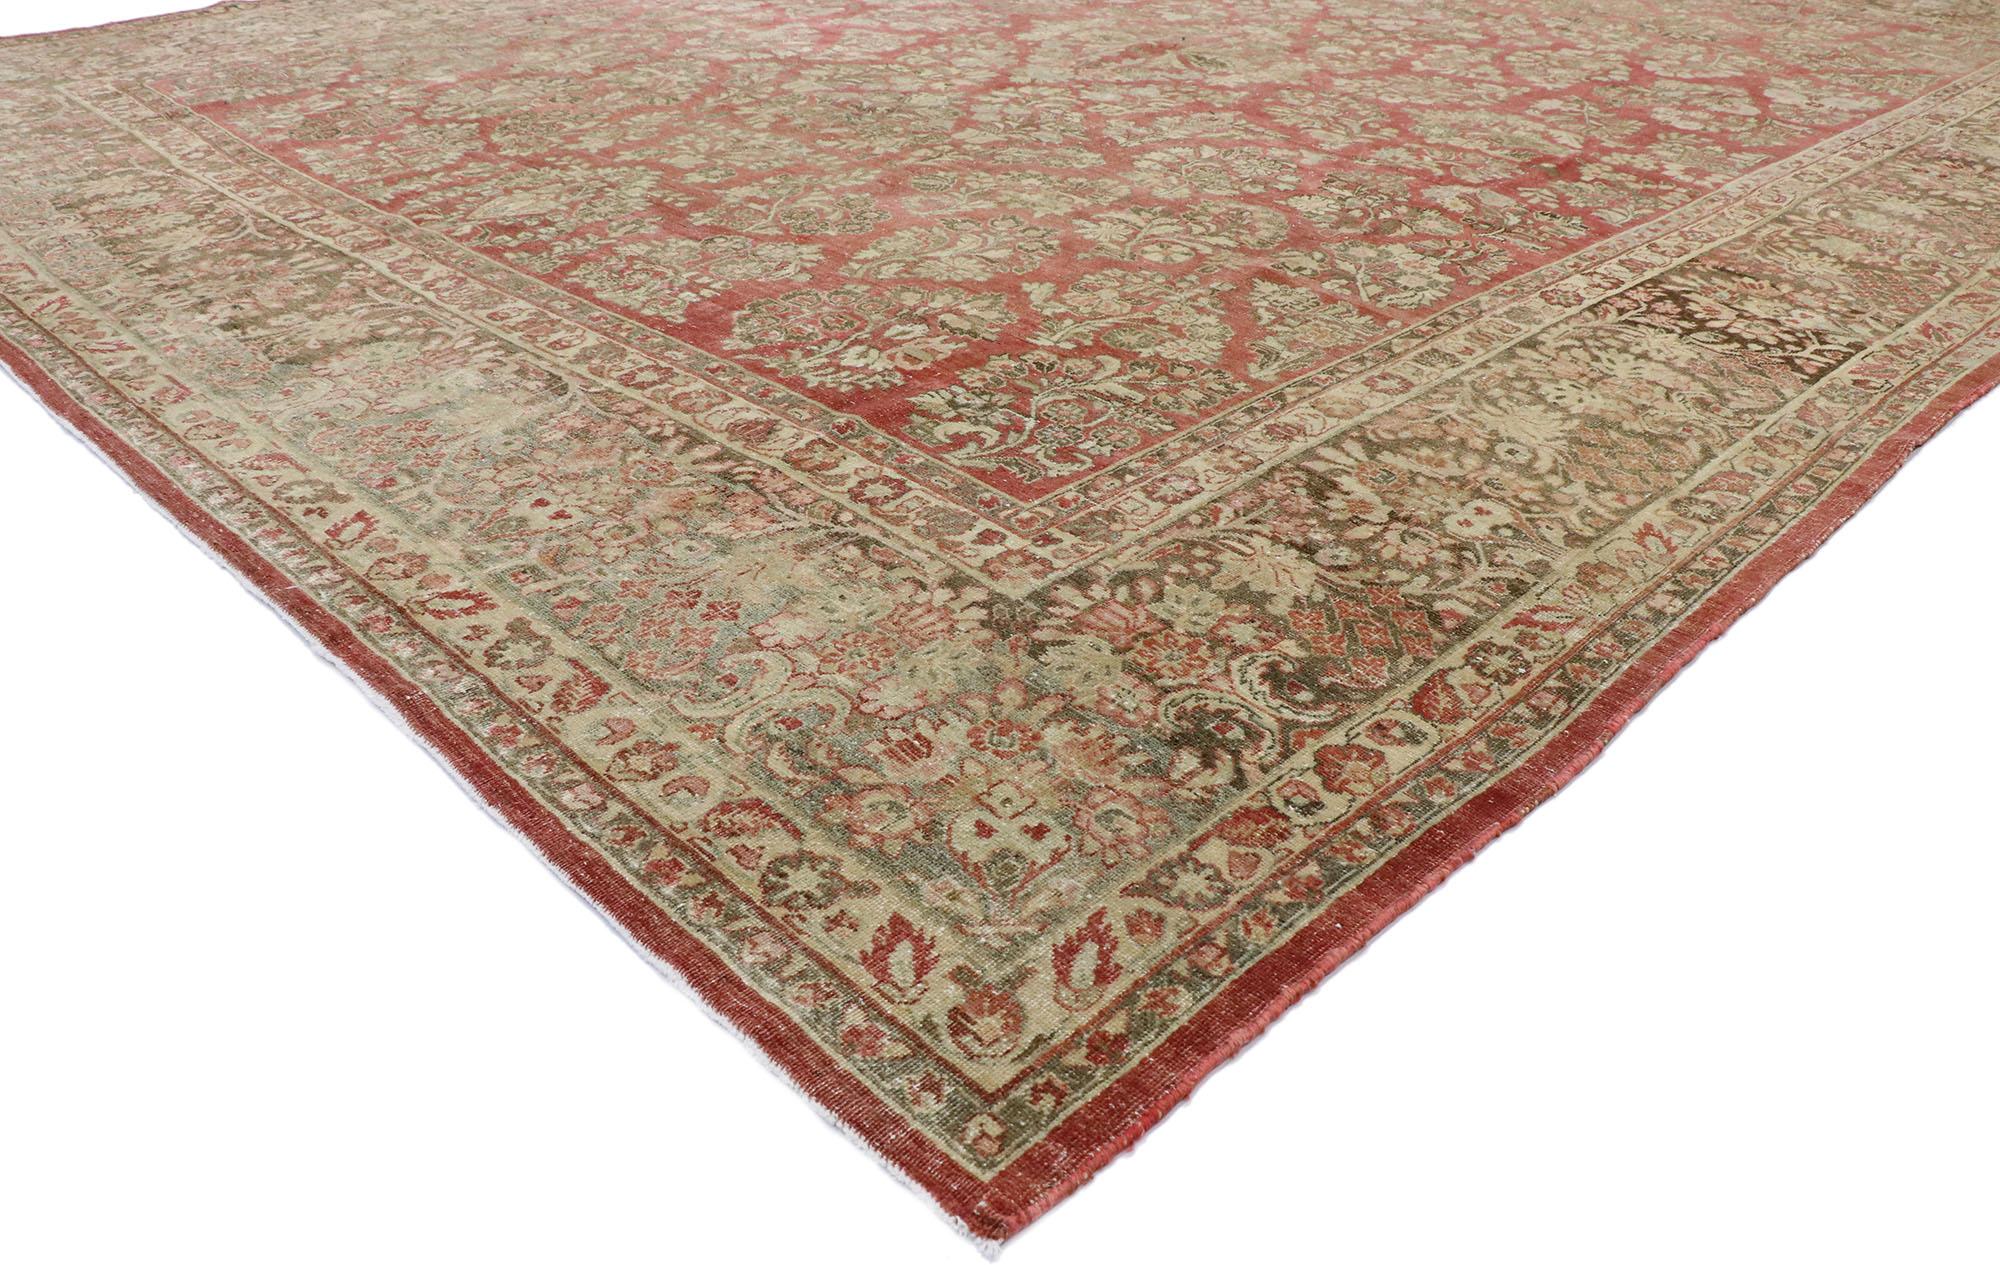 53445, tapis sarouk persan ancien et usé, de style traditionnel américain rustique. Avec son attrait intemporel, ses couleurs douces et ses éléments de design naturalistes, ce tapis sarouk persan ancien en laine nouée à la main peut s'intégrer